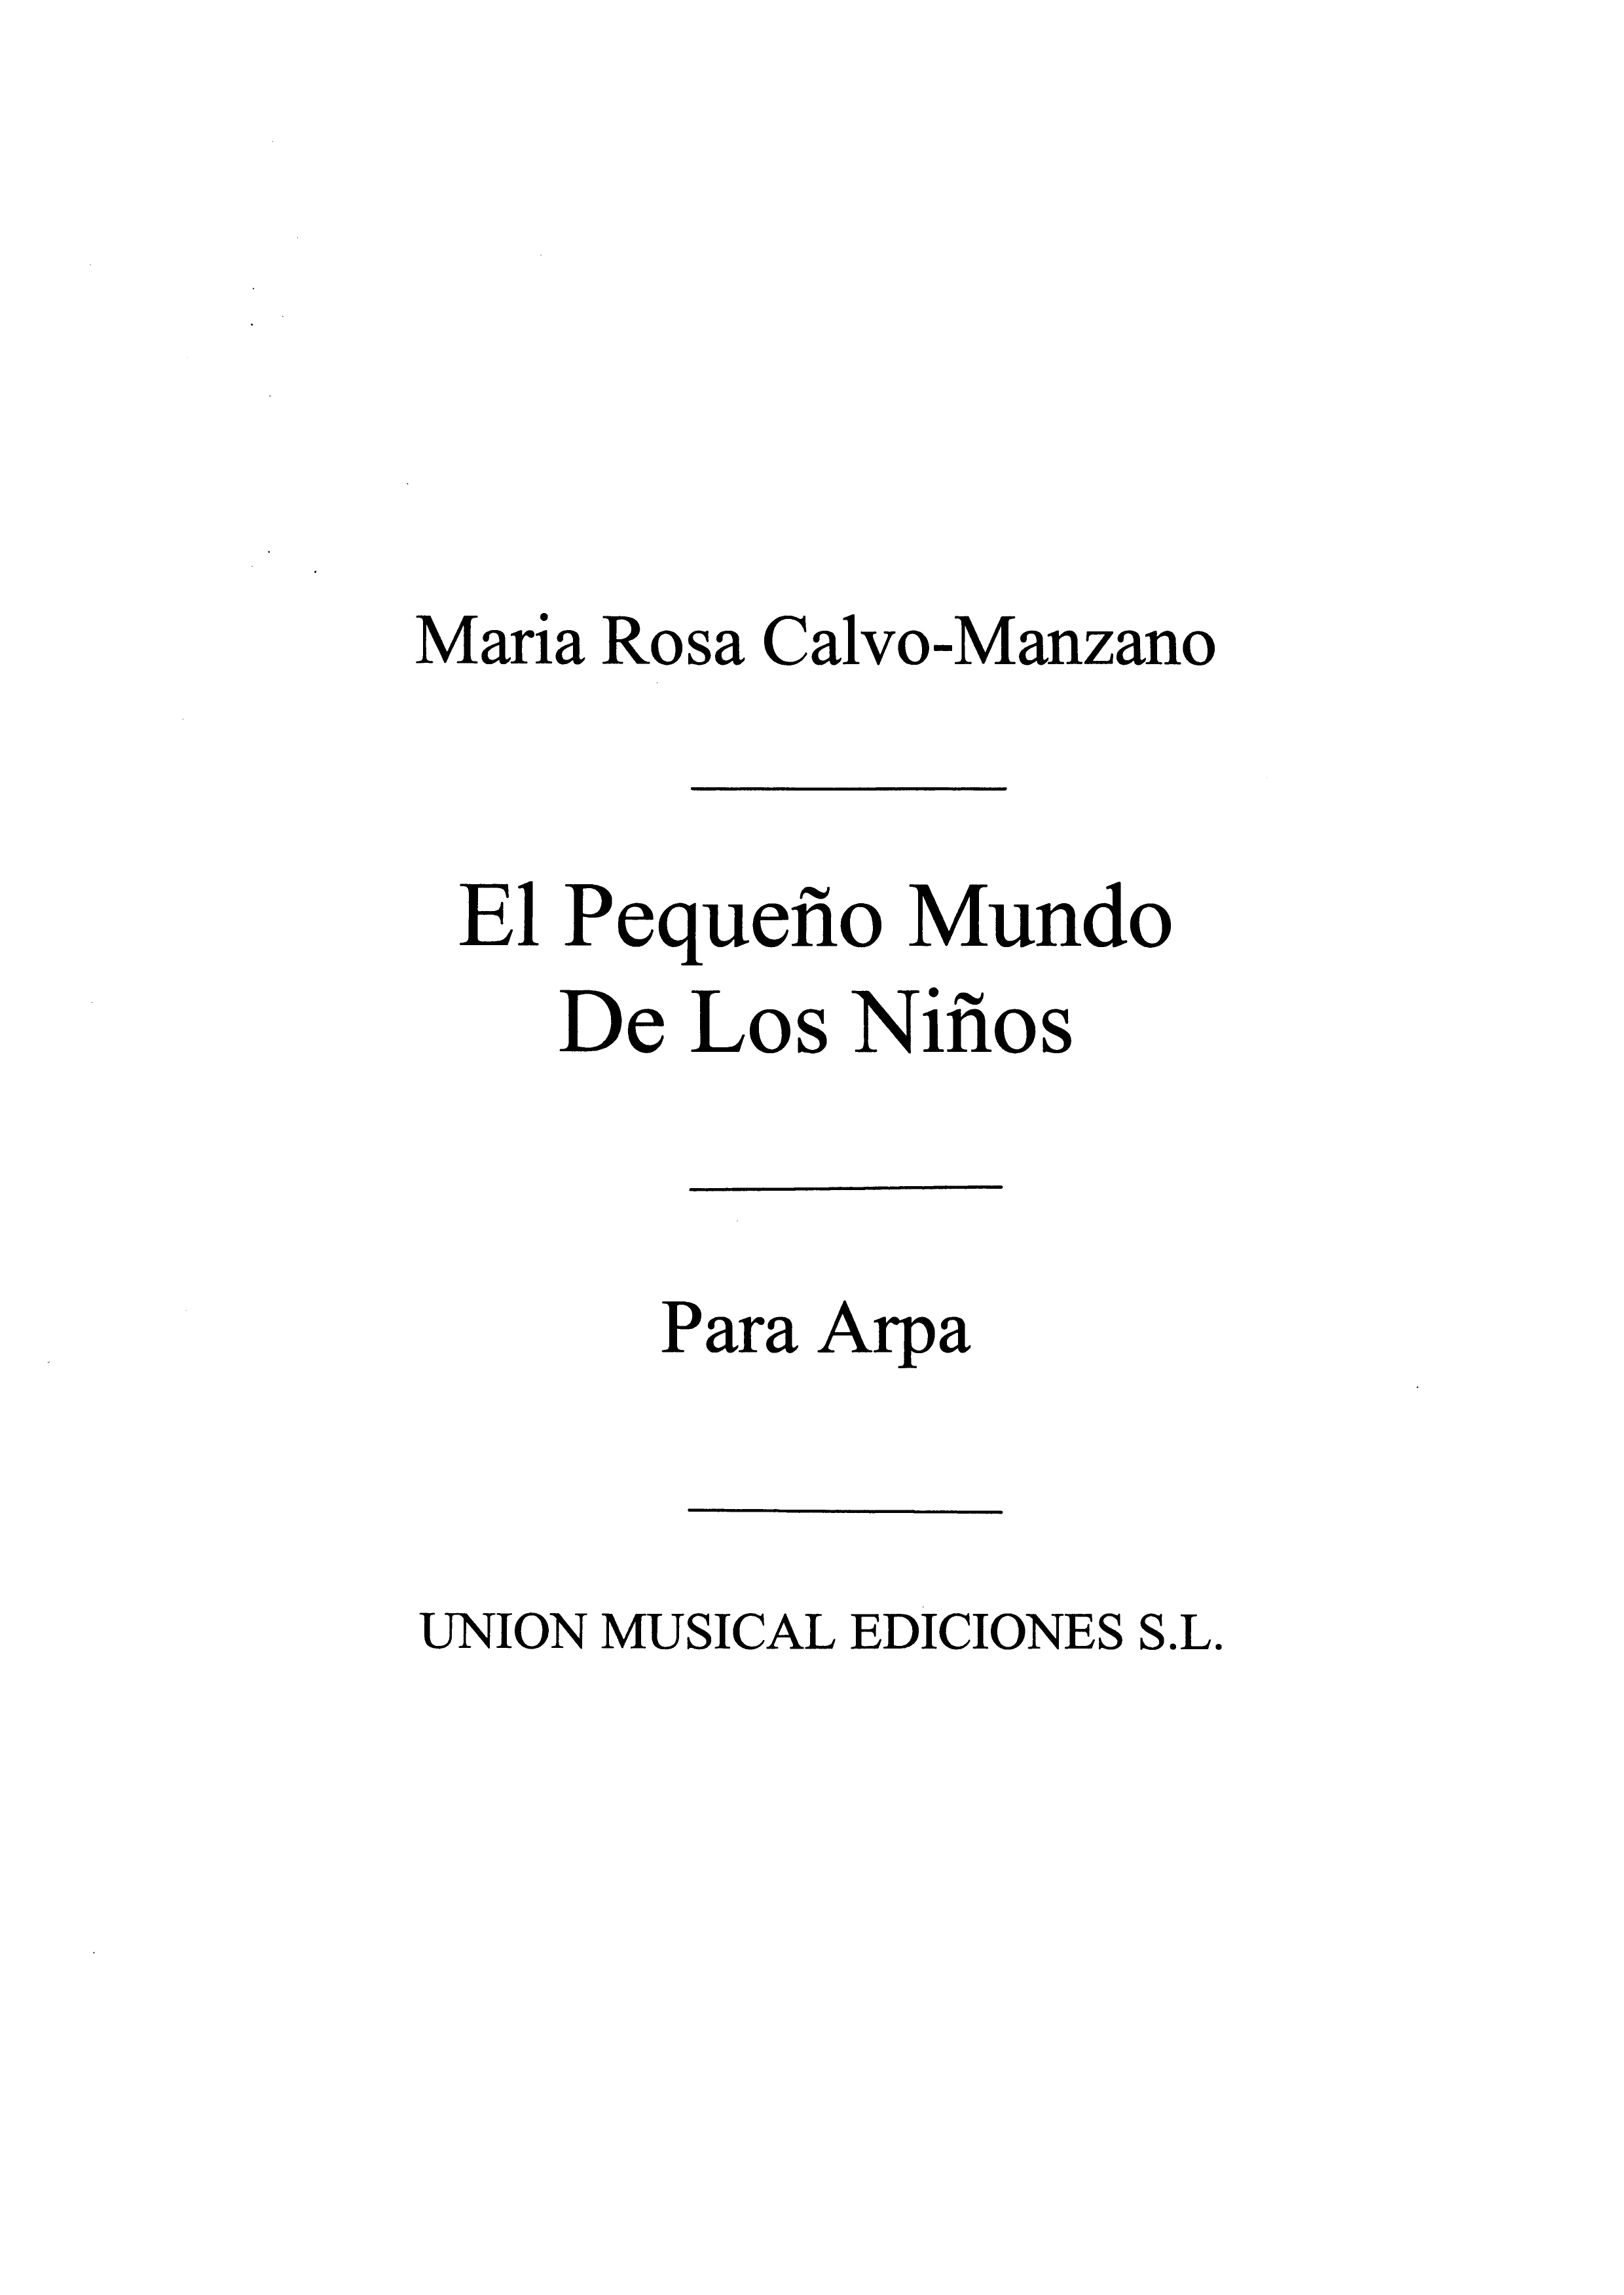 Maria Rosa Calvo Manzano: El Pequeno Mundo De Los Ninos: Harp: Instrumental Work